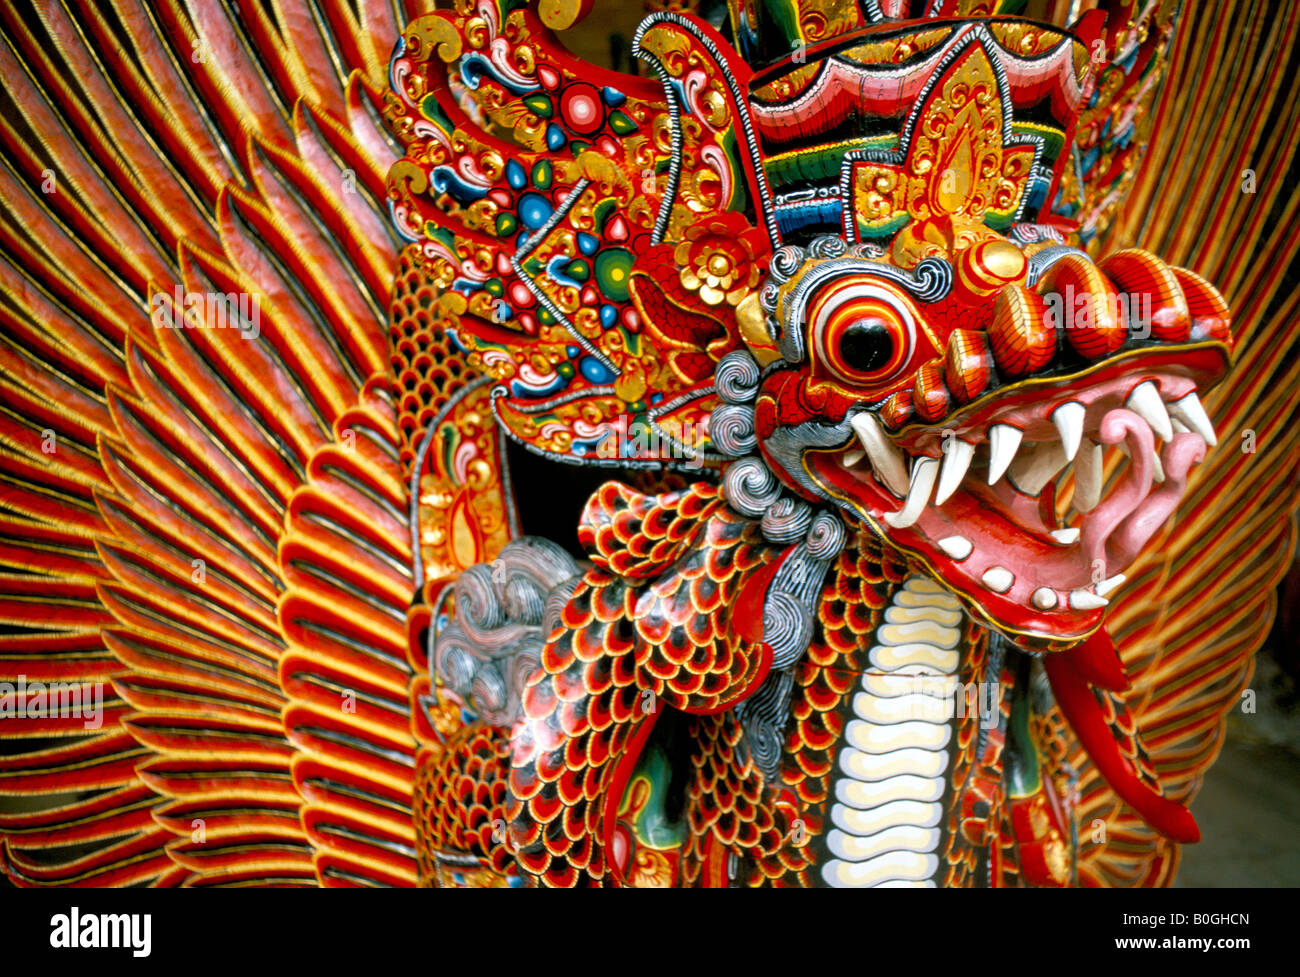 Un dragón de madera pintado de muchos colores, Bali, Indonesia. Foto de stock